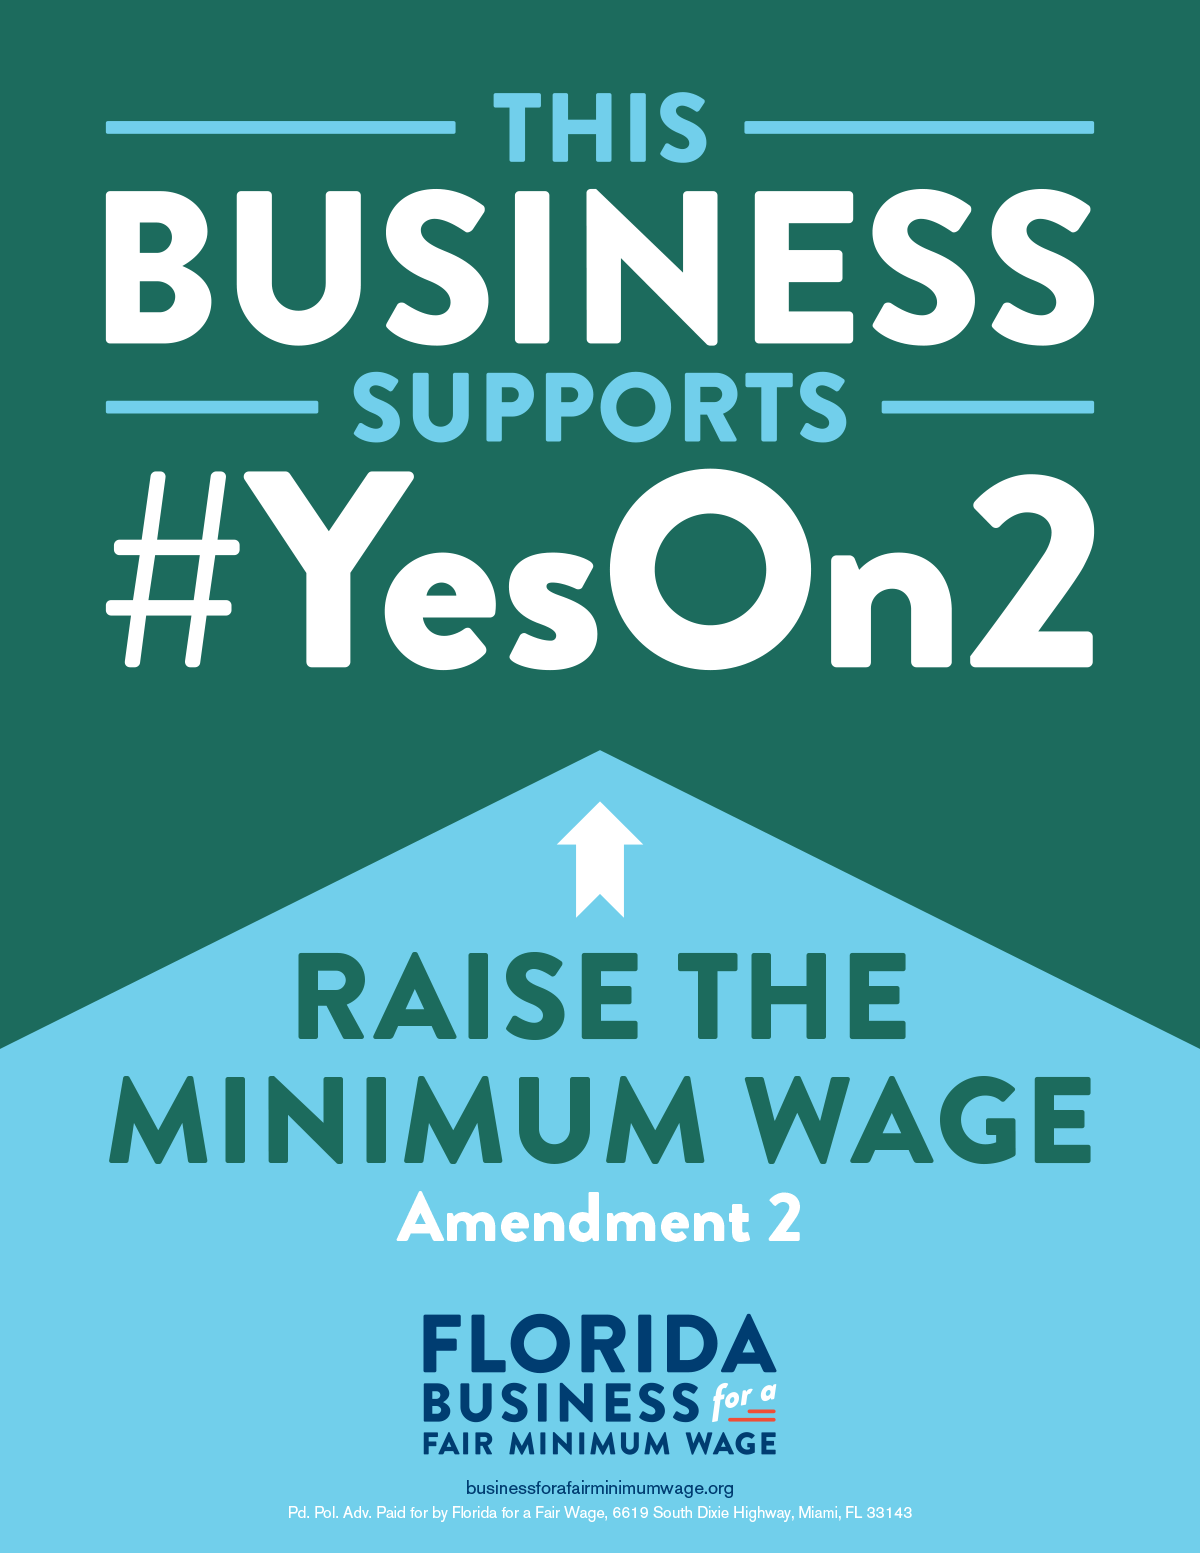 Florida Businesses Support Amendment 2